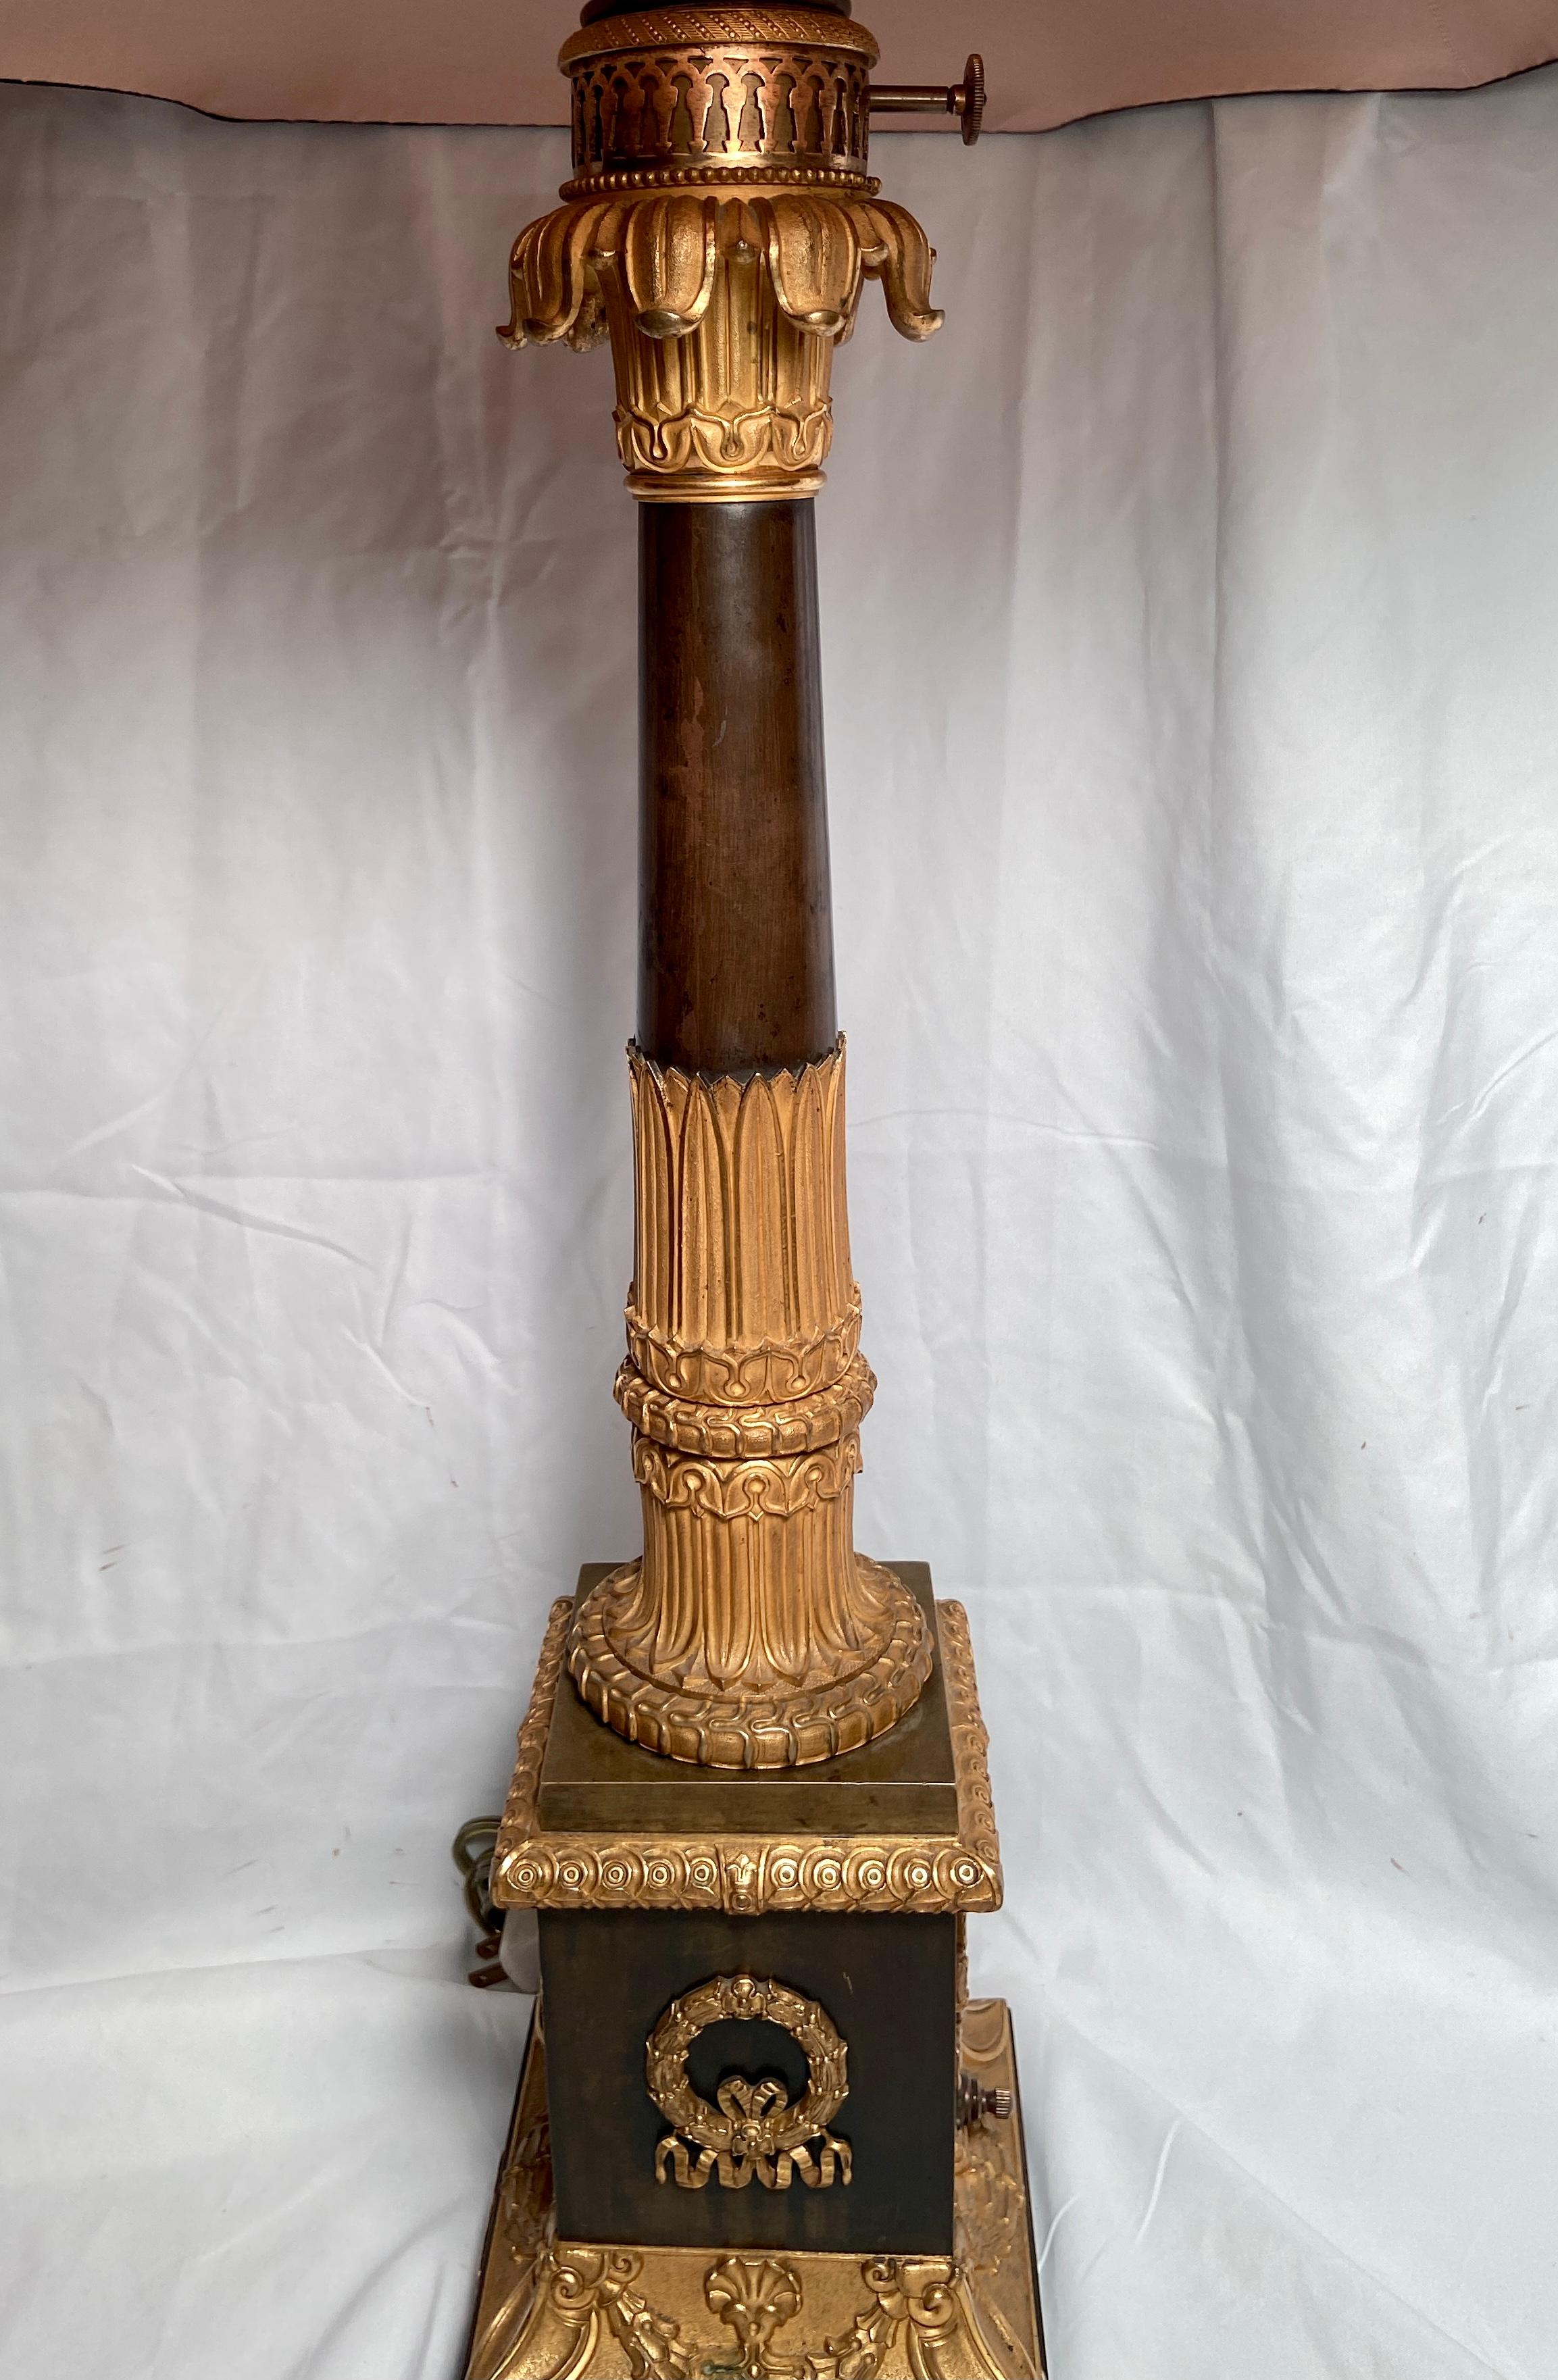 Antique lampe à huile Empire du début du 19ème siècle en bronze doré et bronze patiné.